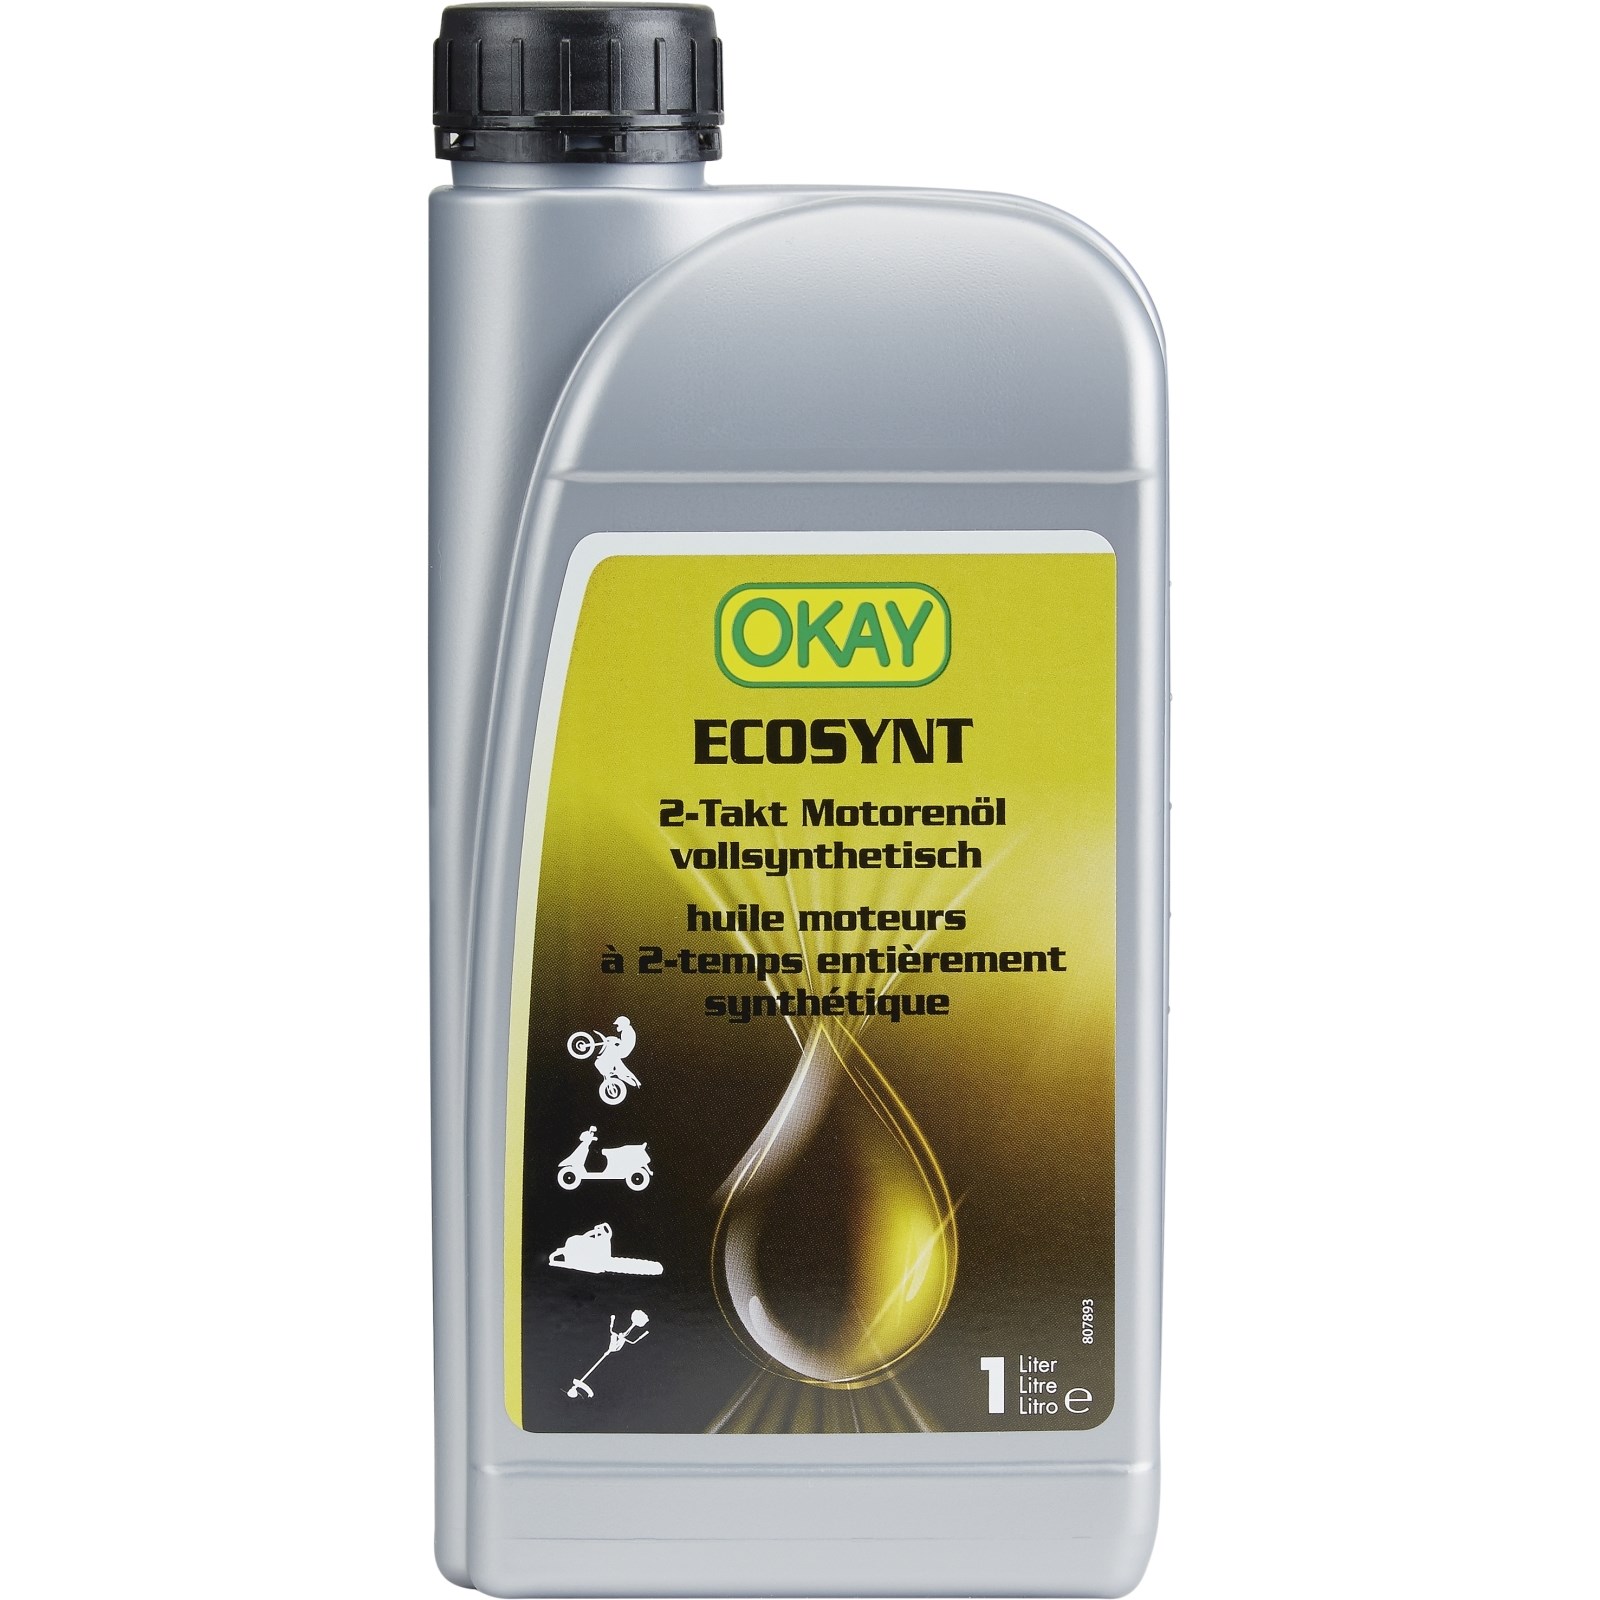 Motorenöl 2-Takt Ecosynt Okay 1 l kaufen - Motorenöle - LANDI